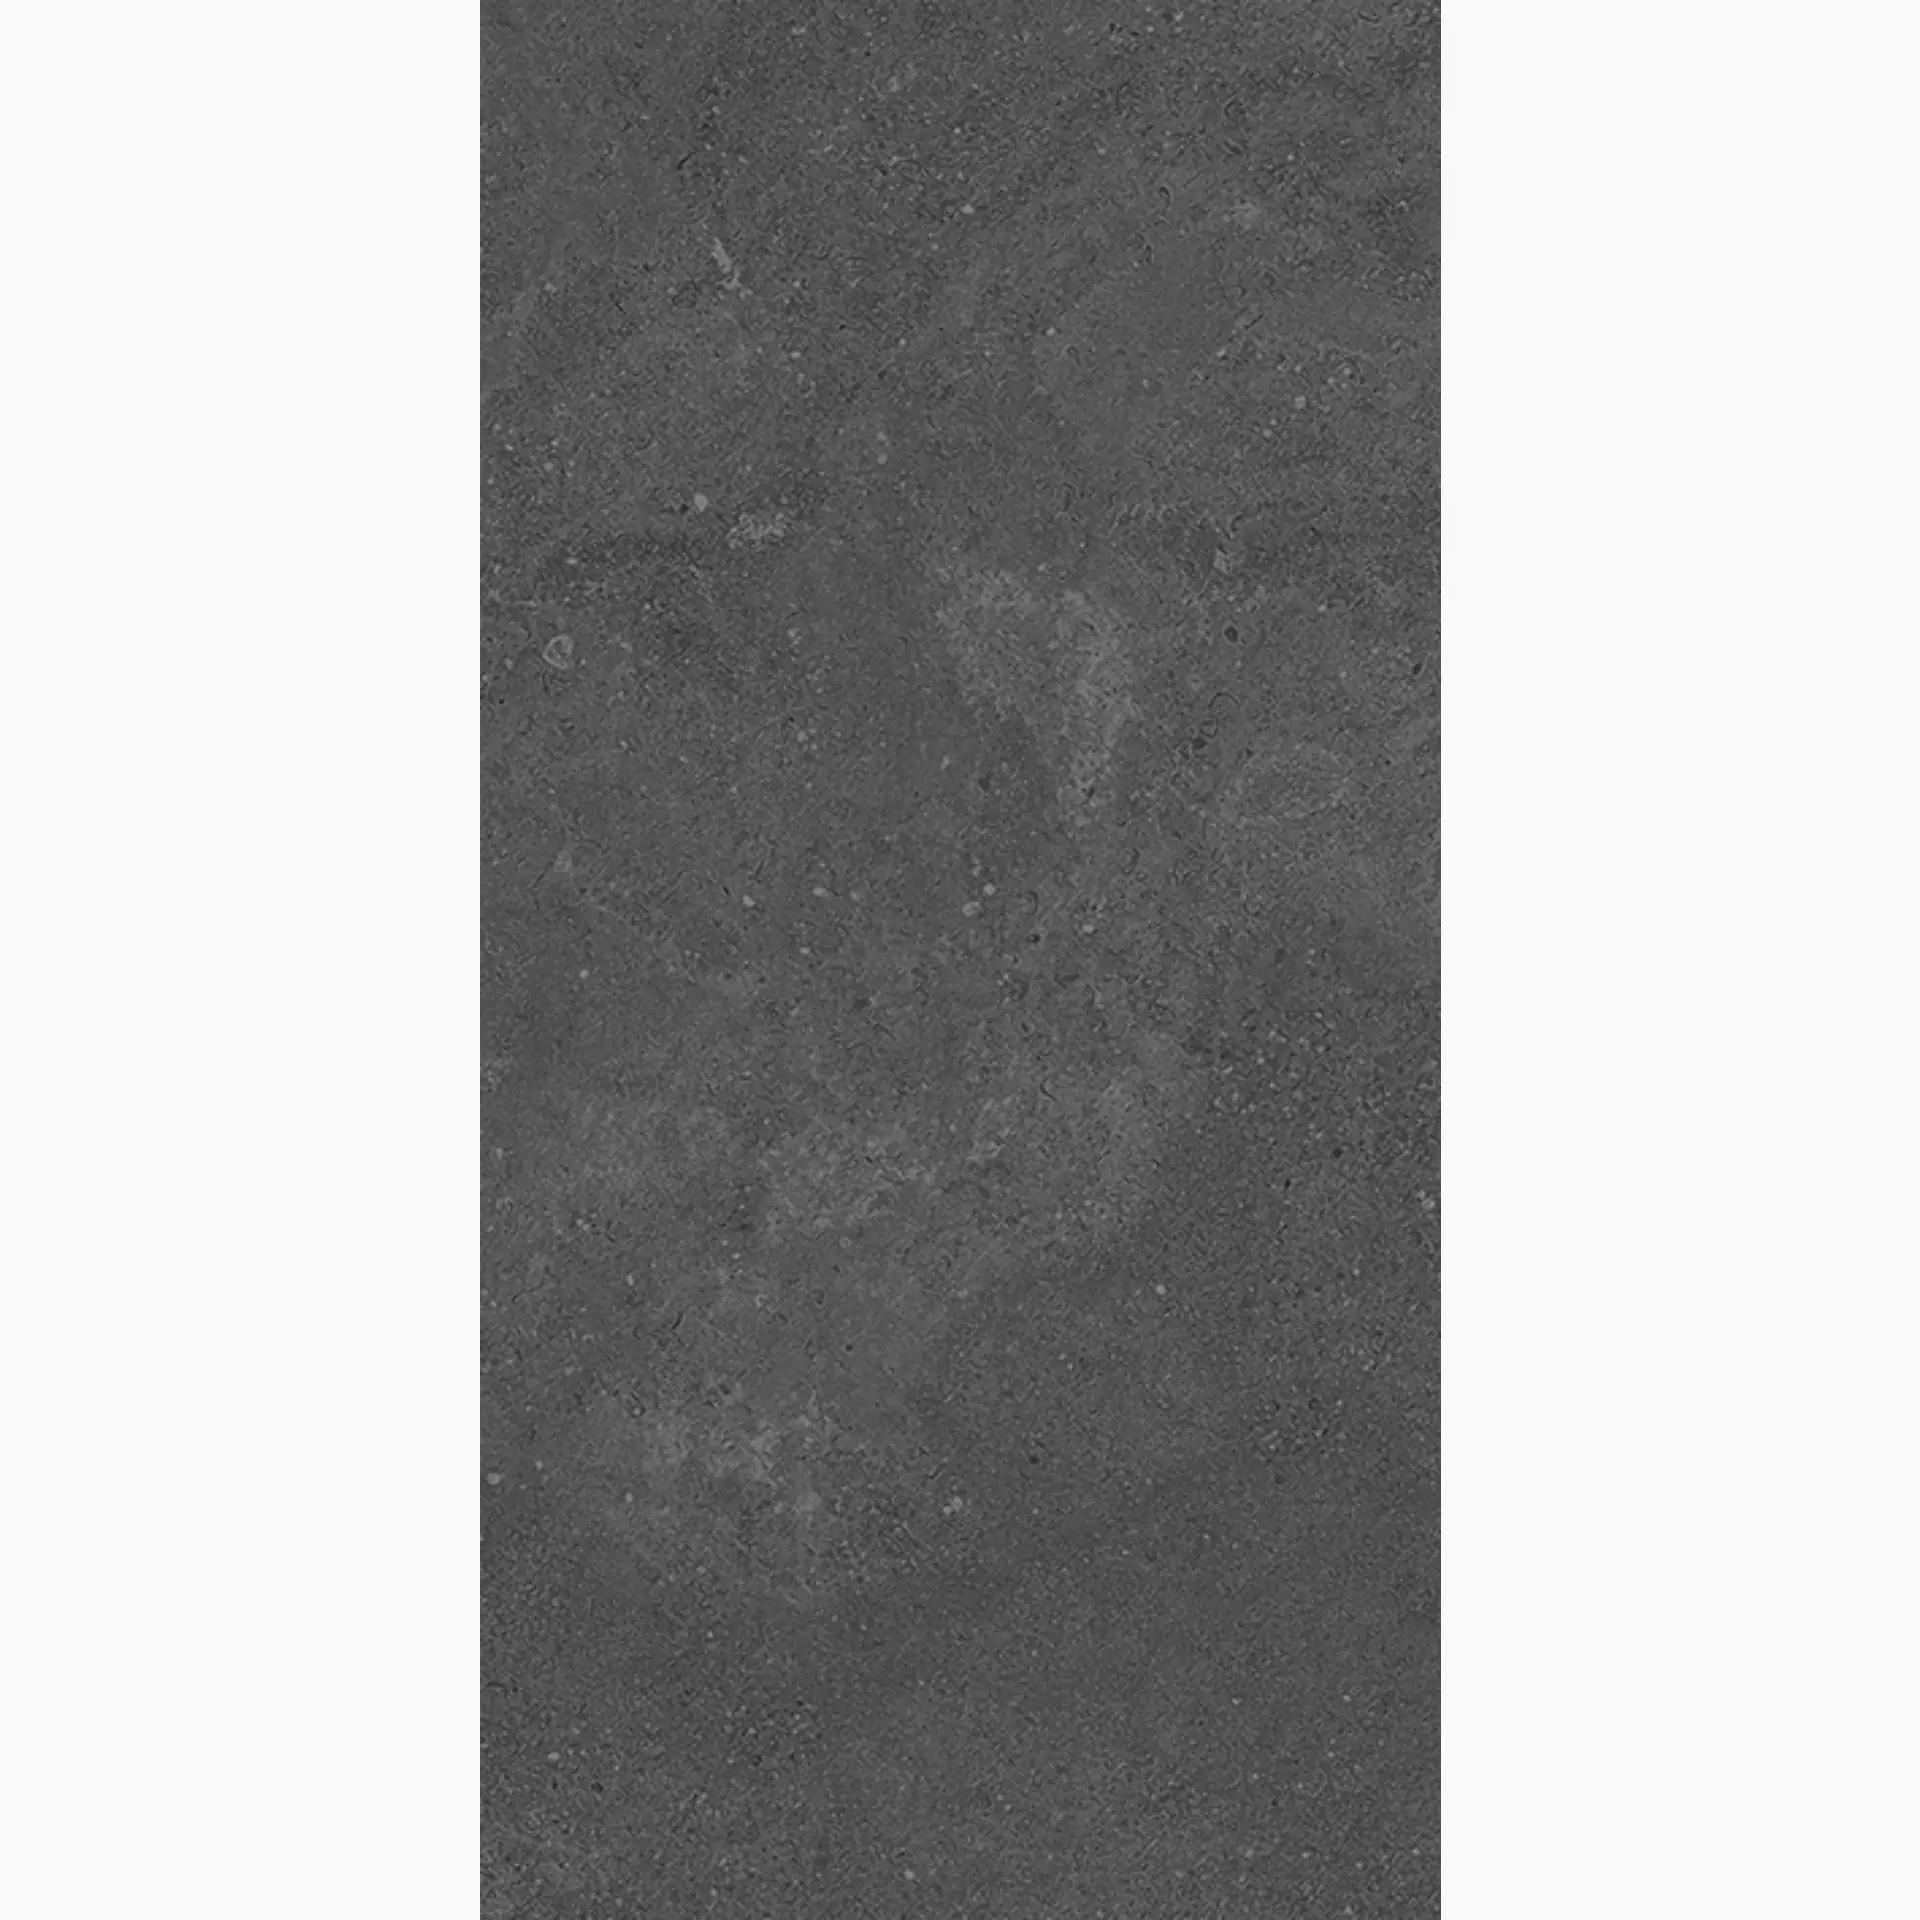 Wandfliese,Bodenfliese Villeroy & Boch Hudson Magma Matt Magma 2526-SD8R matt 30x60cm rektifiziert 10mm